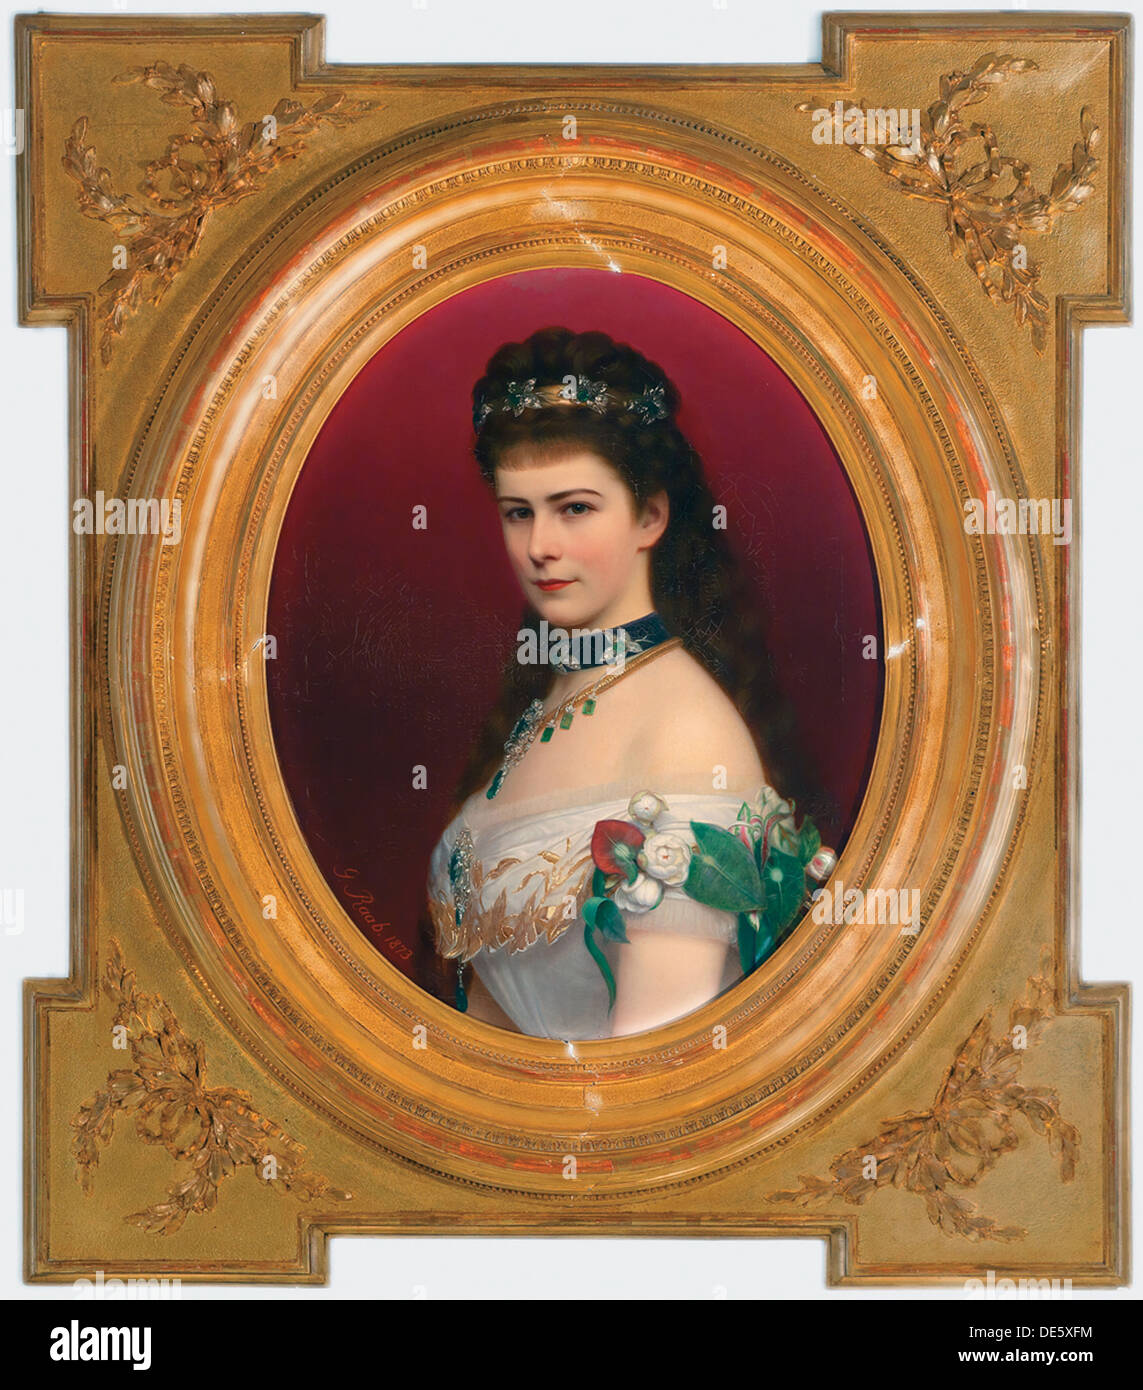 Ritratto di Elisabetta di Baviera con diadema, prima del 1885. Artista: Raab, Georg Martin Ignaz (1821-1885) Foto Stock